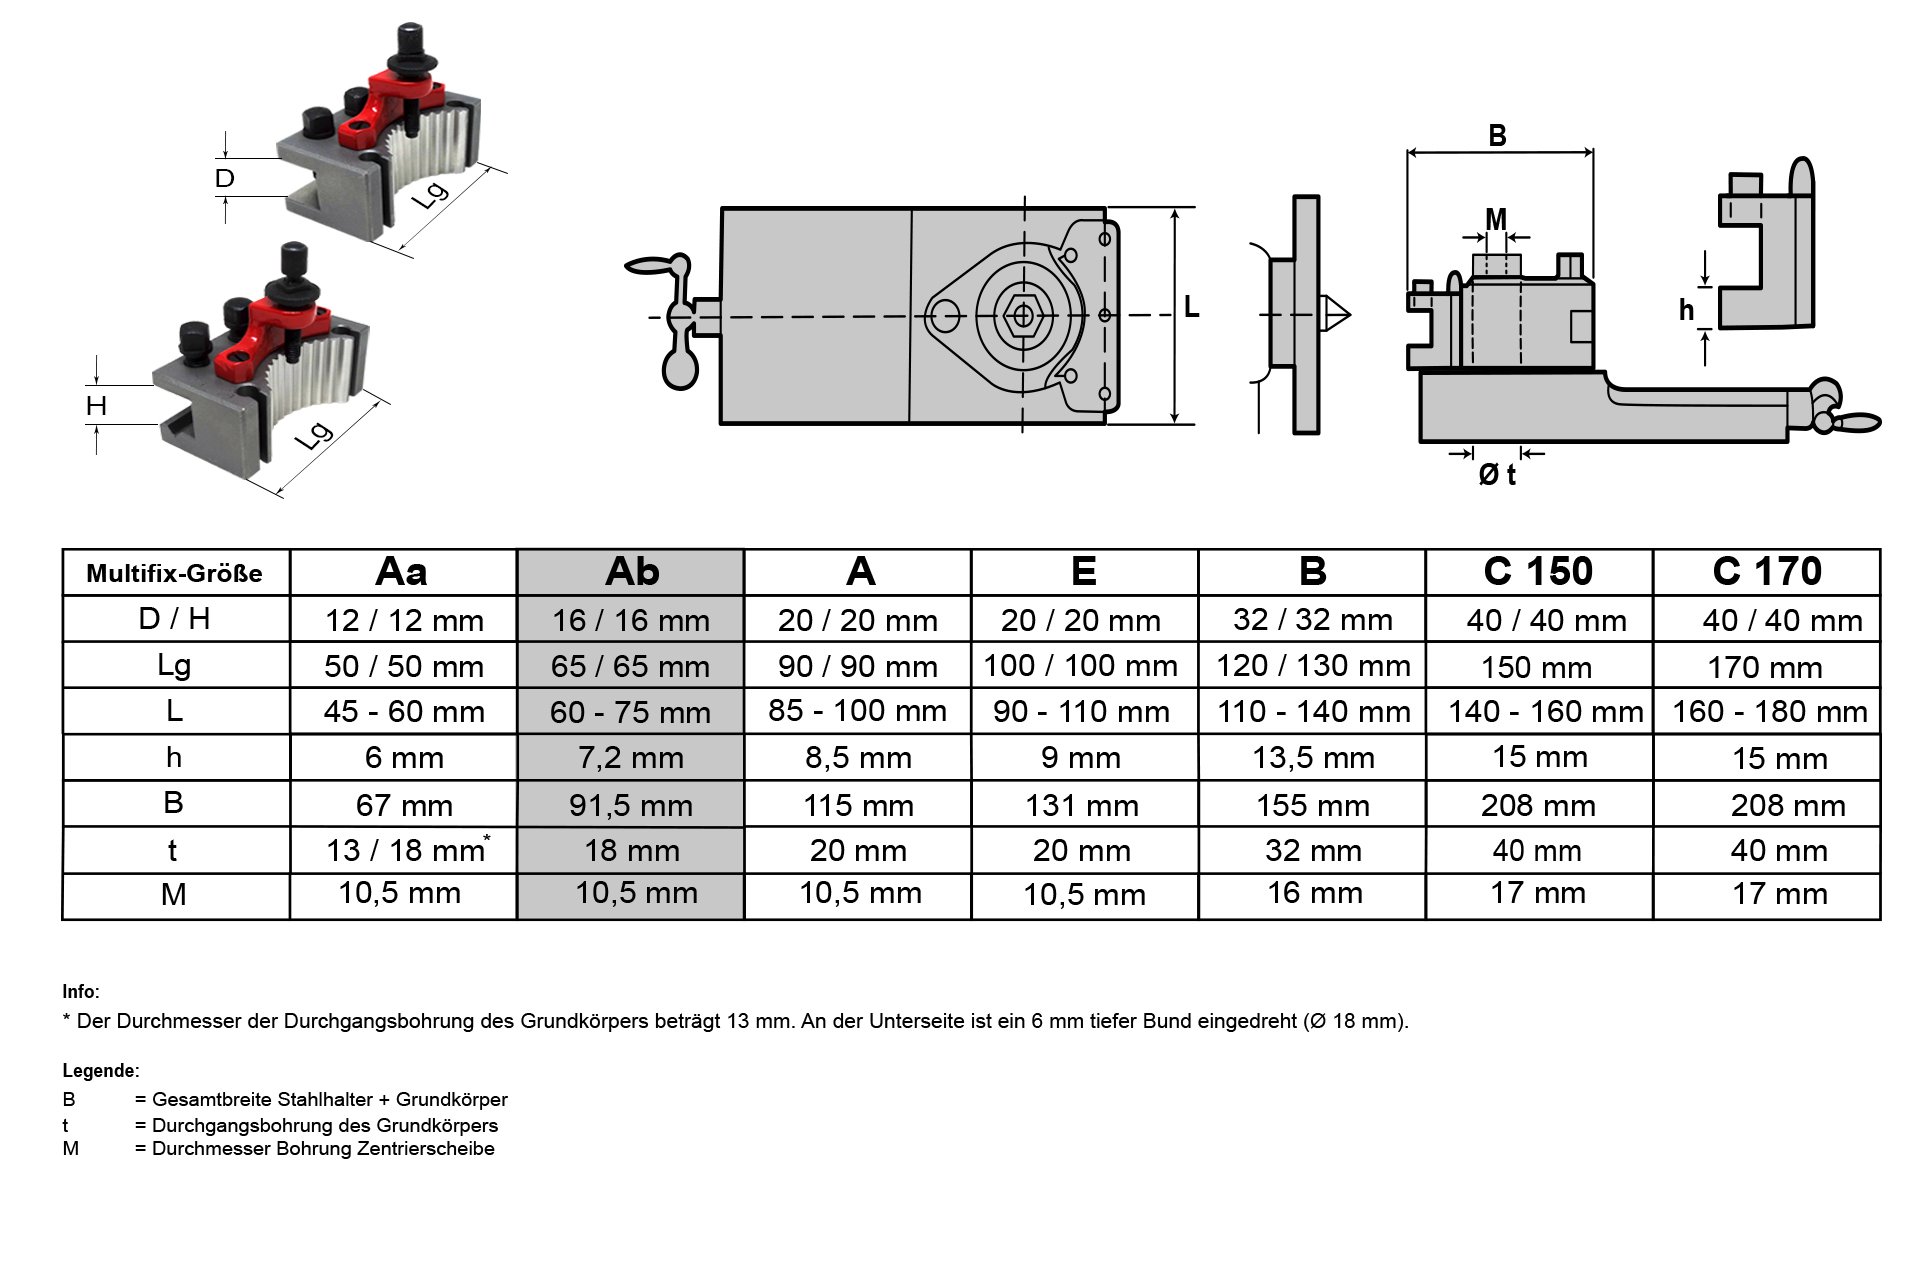 Schnellwechsel-Stahlhalter-Set, System "Multifix", Größe Ab